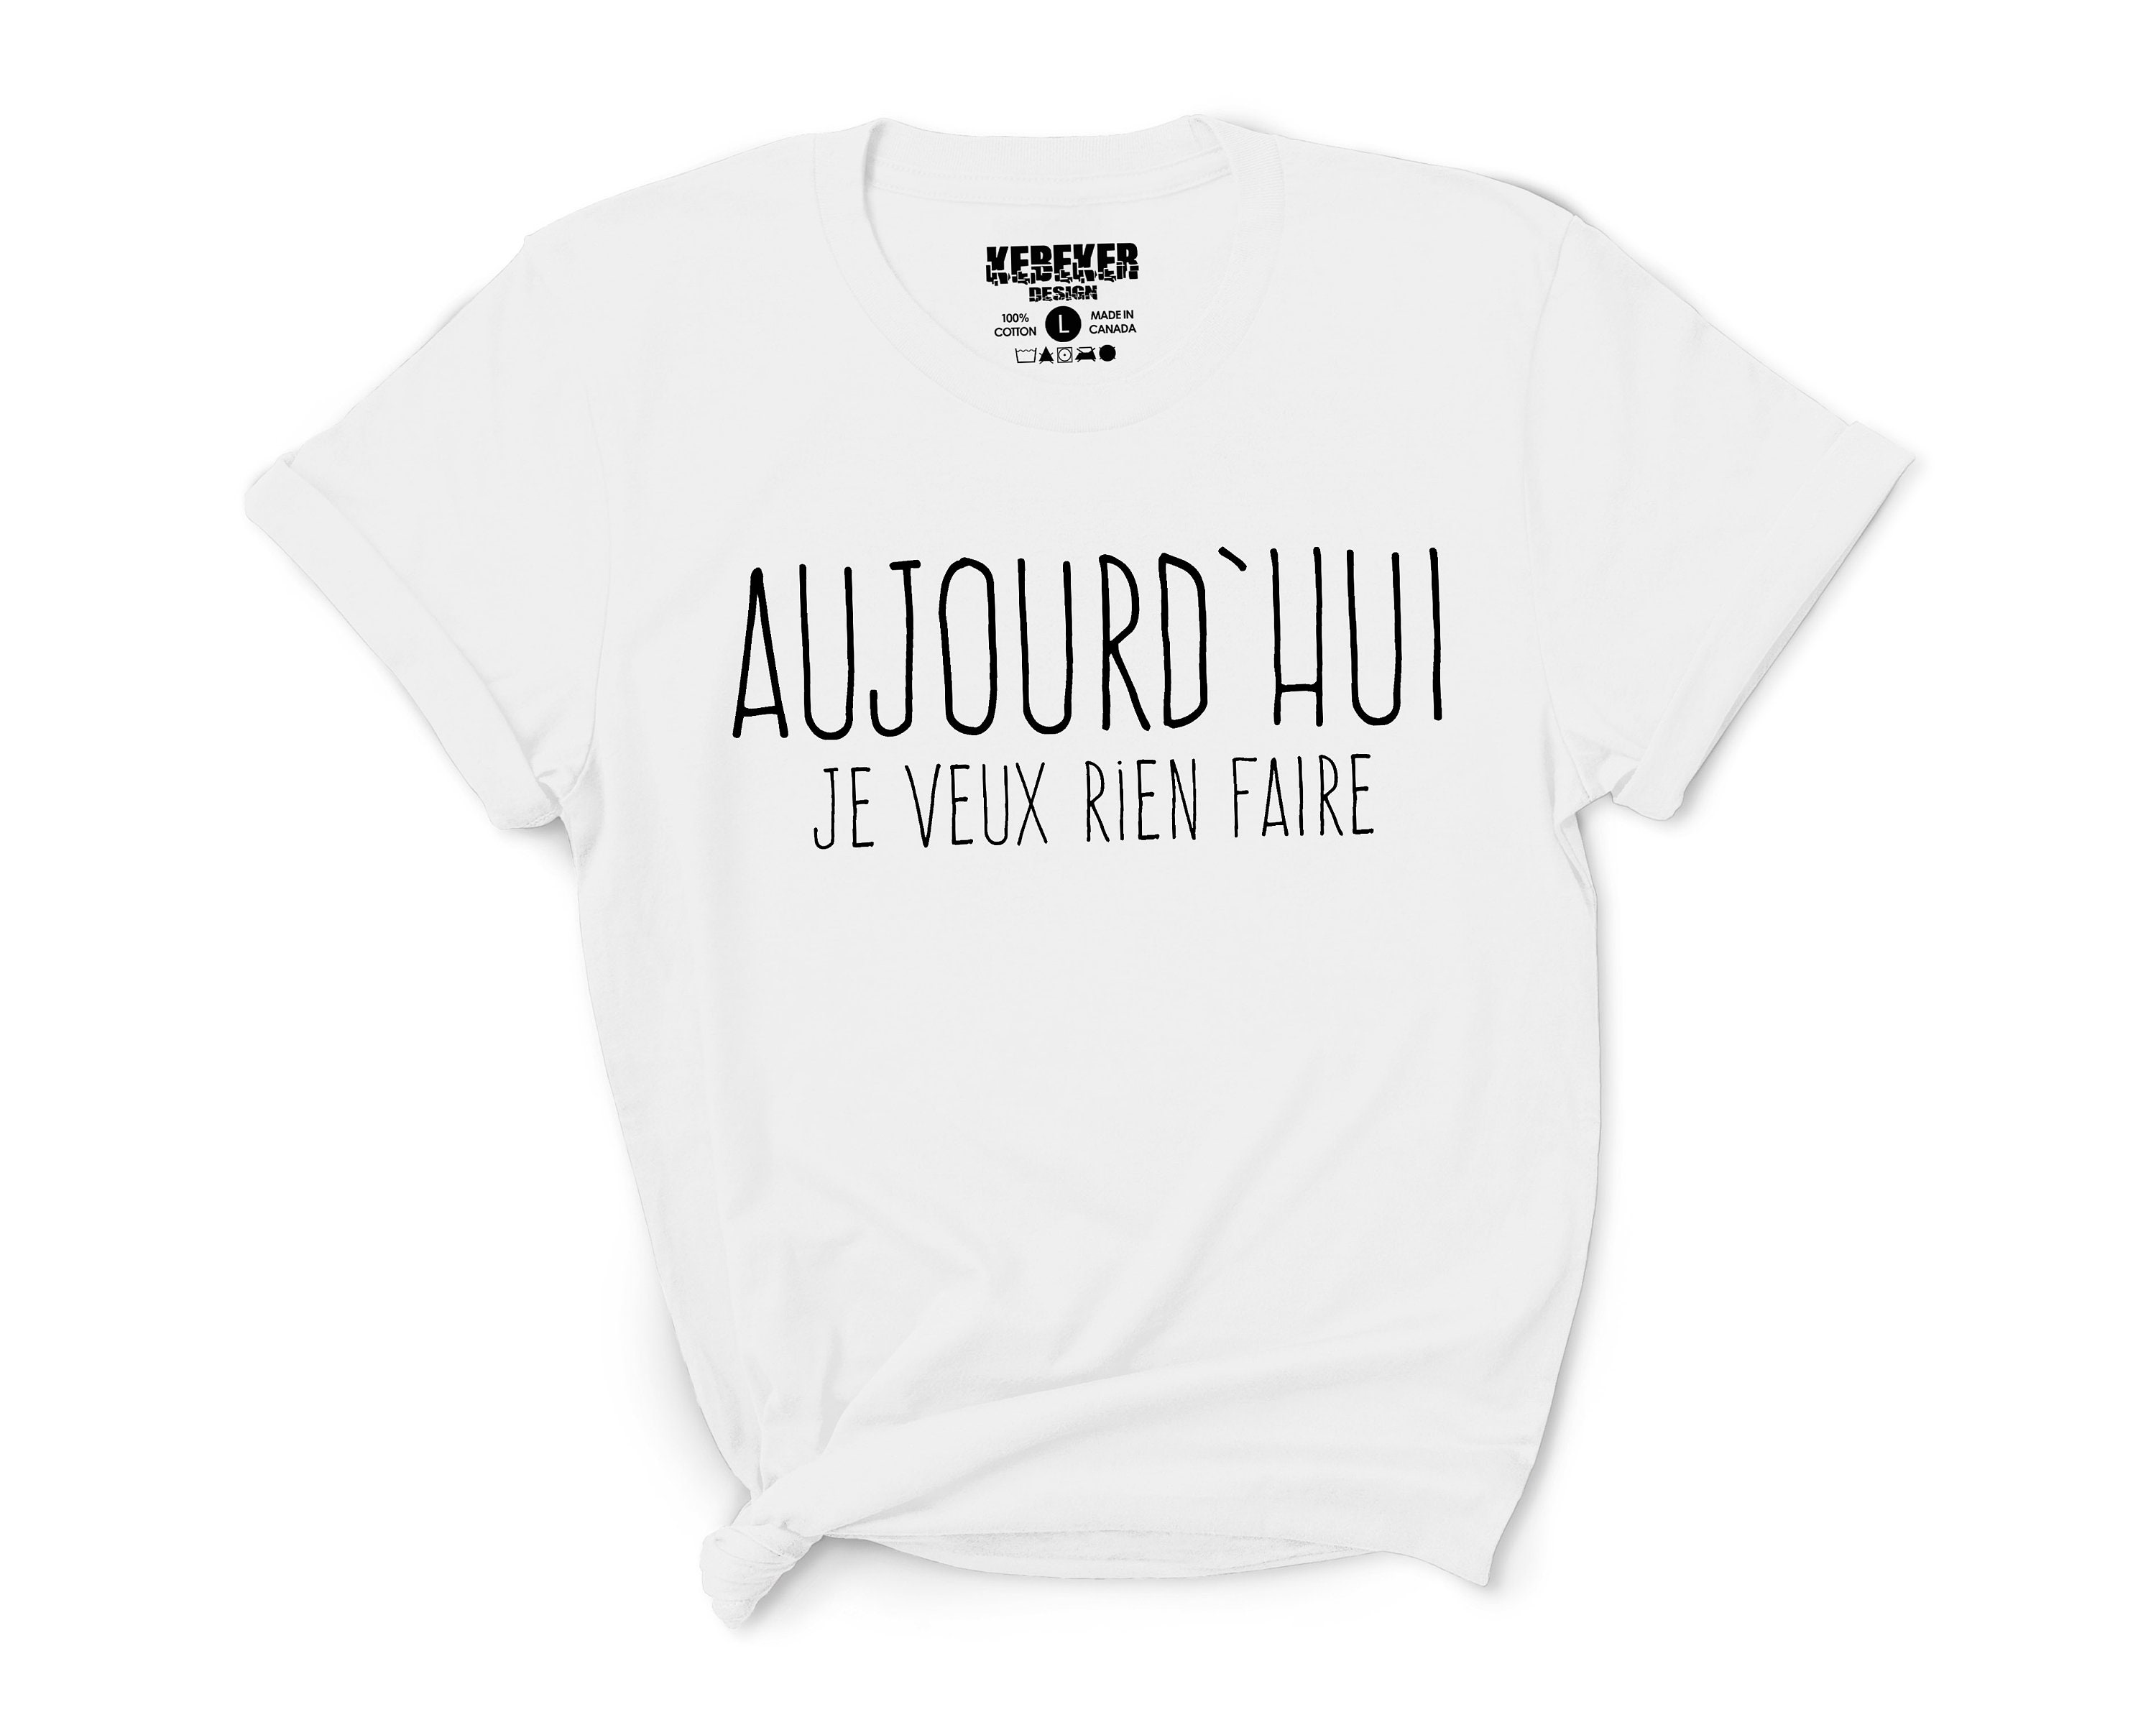 Aujourd'hui Je Veux Rien Faire T-shirt French Shirt - Etsy